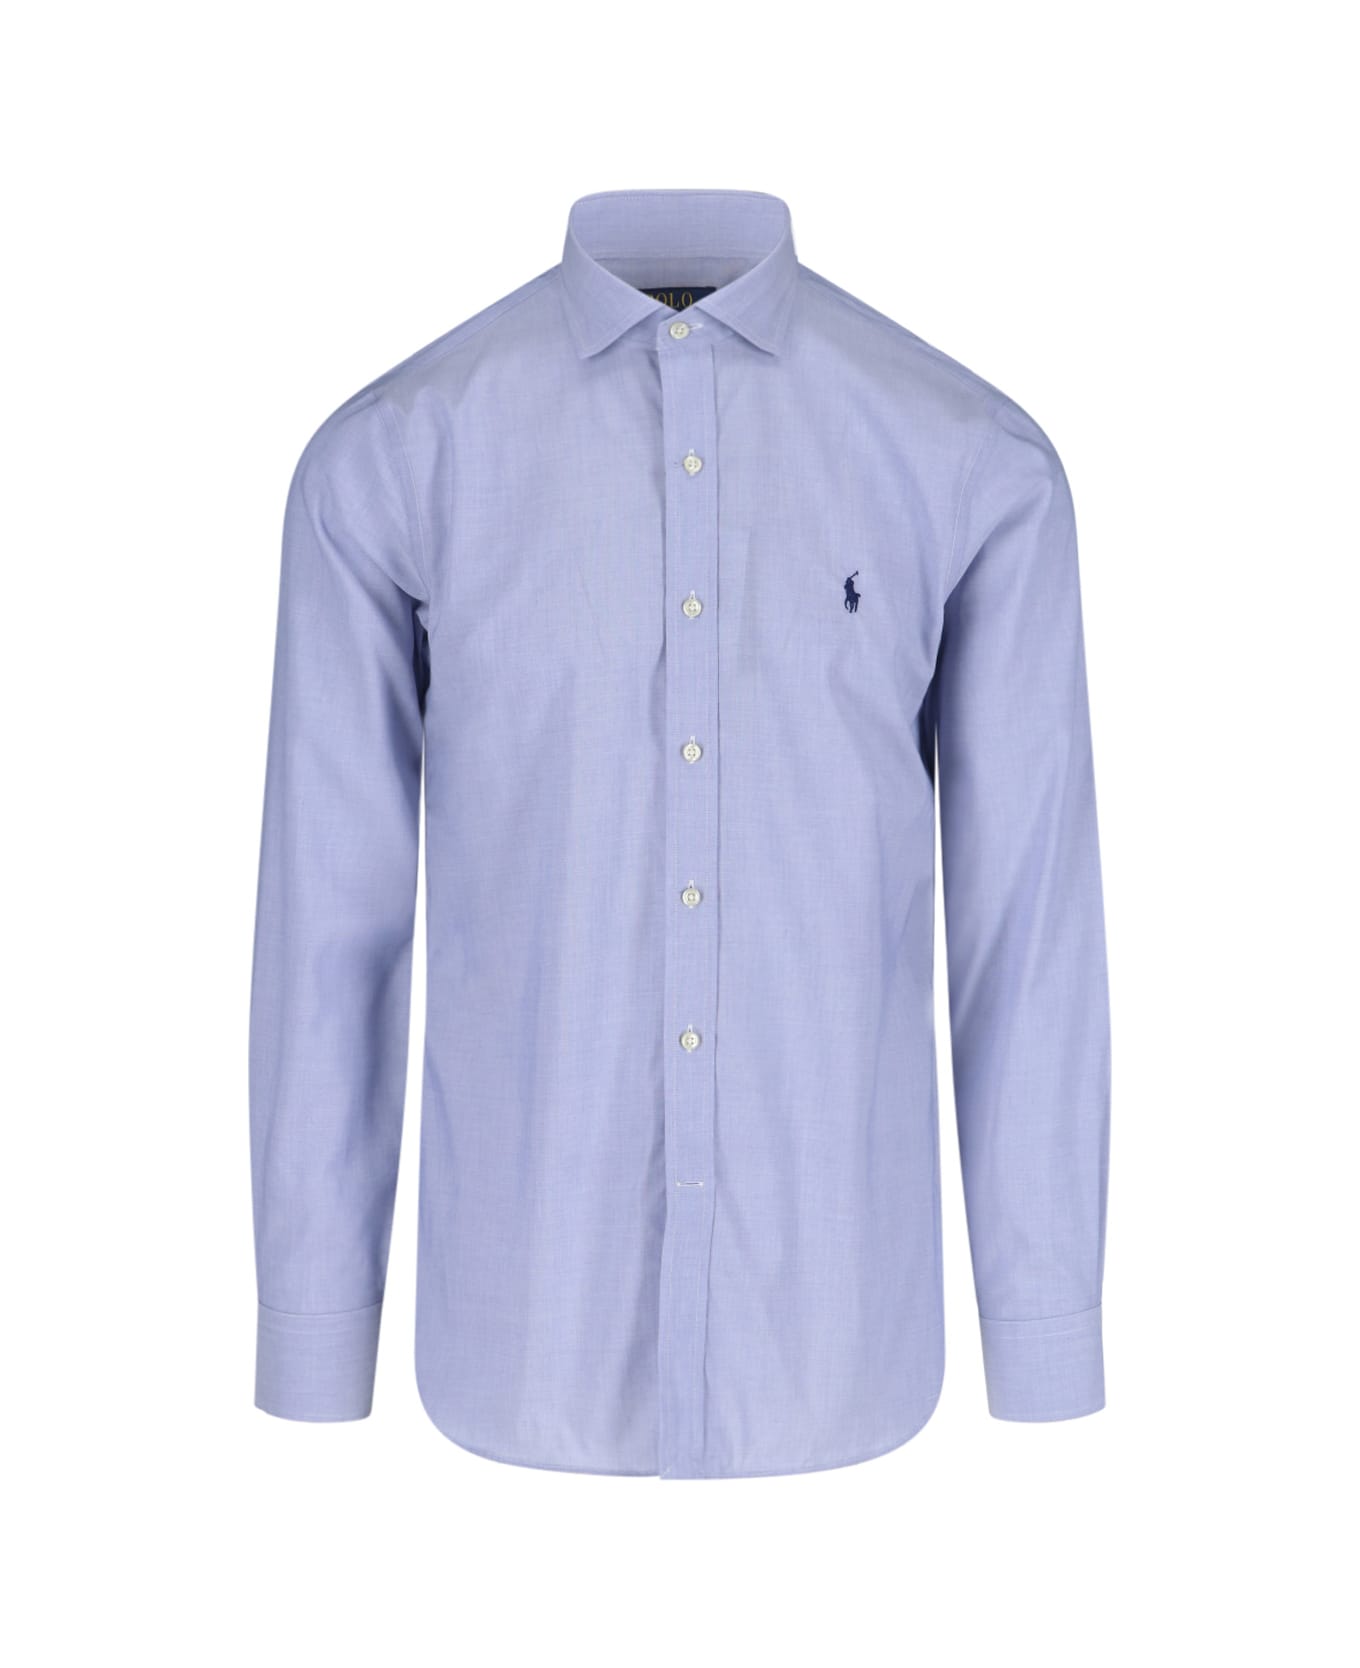 Polo Ralph Lauren Classic Logo Shirt - Light Blue シャツ